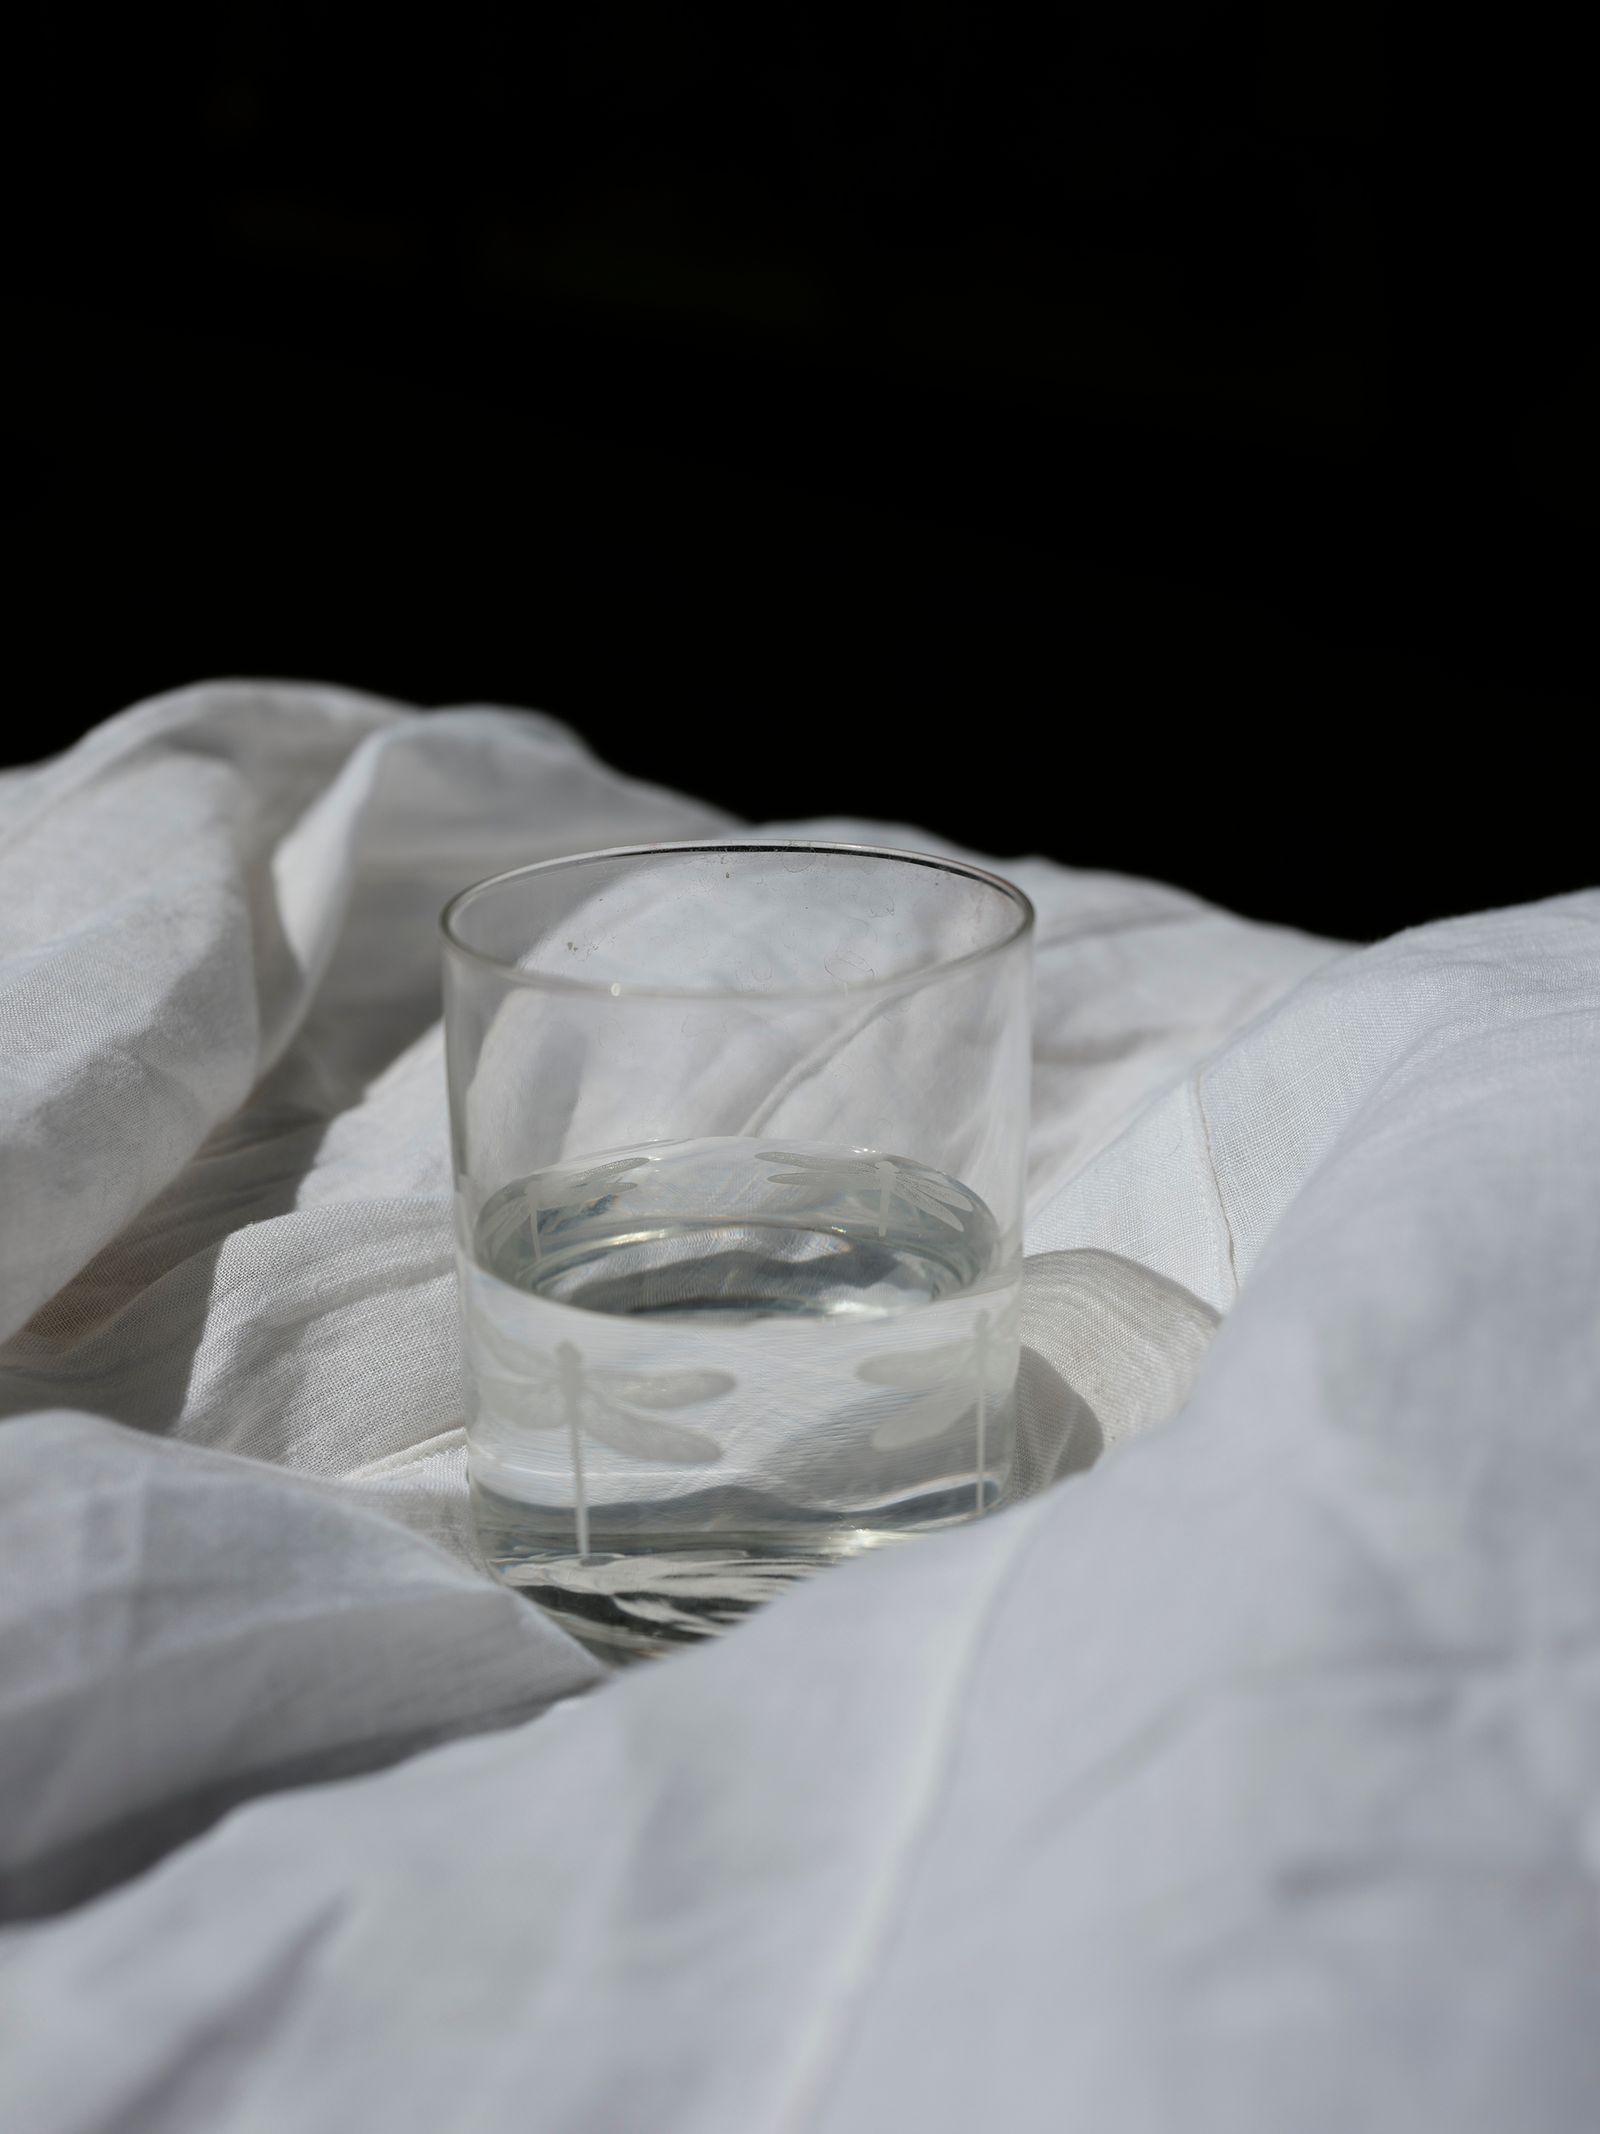 © Izabela Jurcewicz - A necessary glass of water